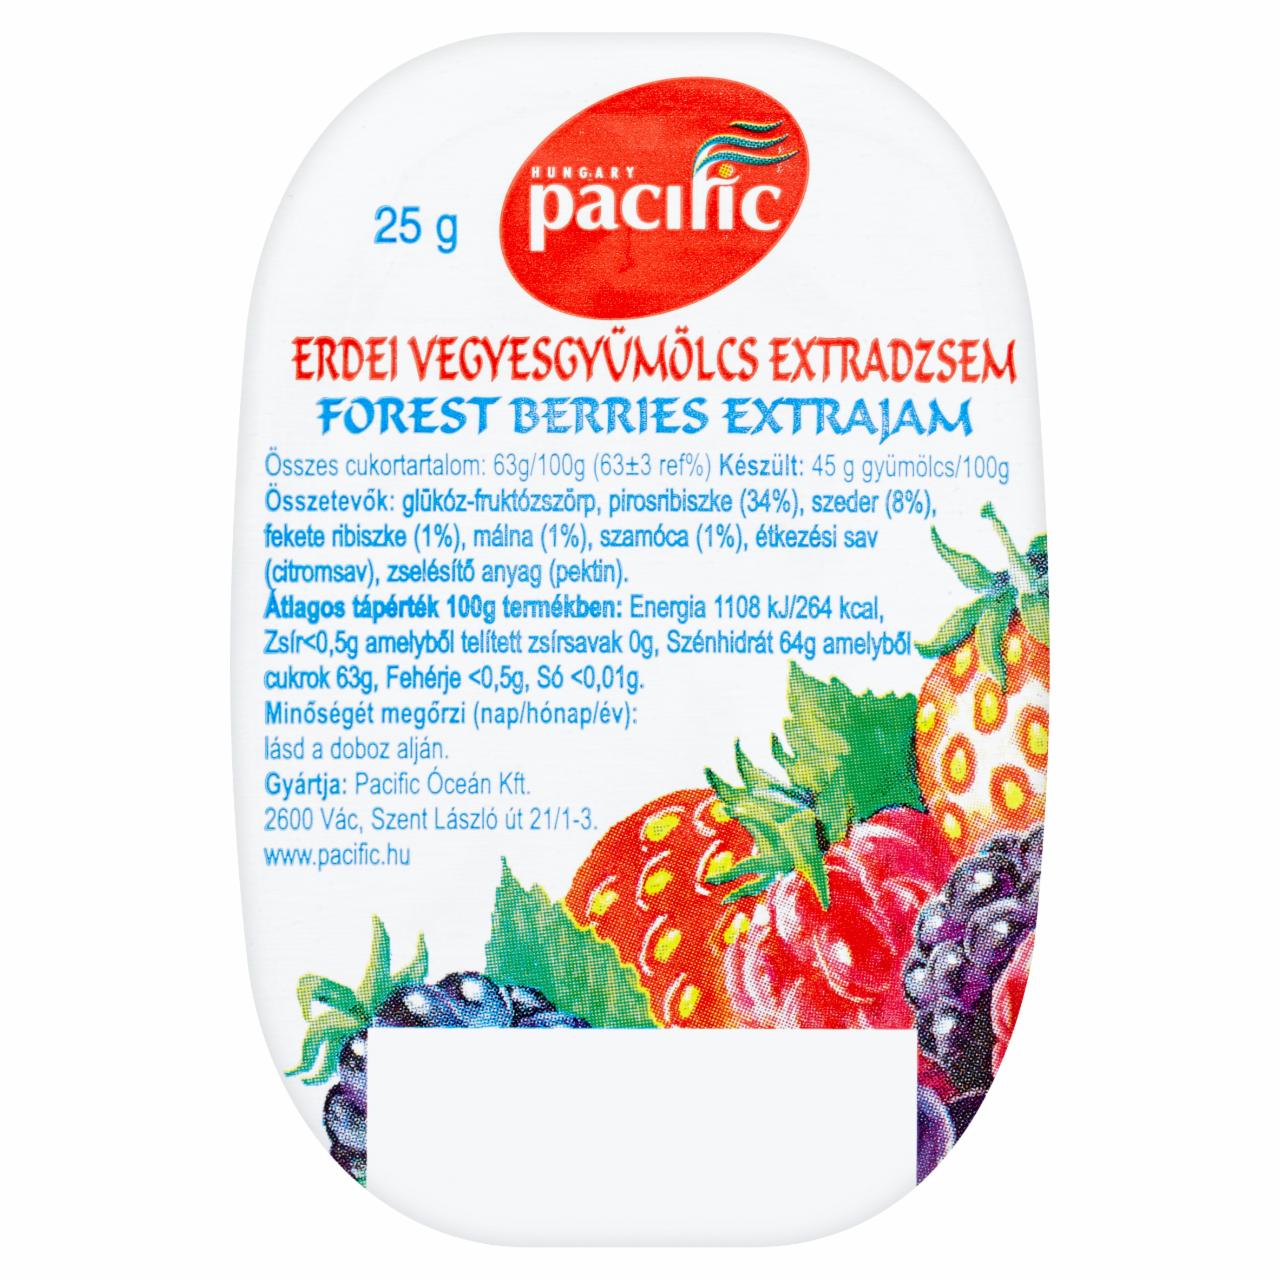 Képek - Pacific erdei vegyesgyümölcs extra dzsem 25 g